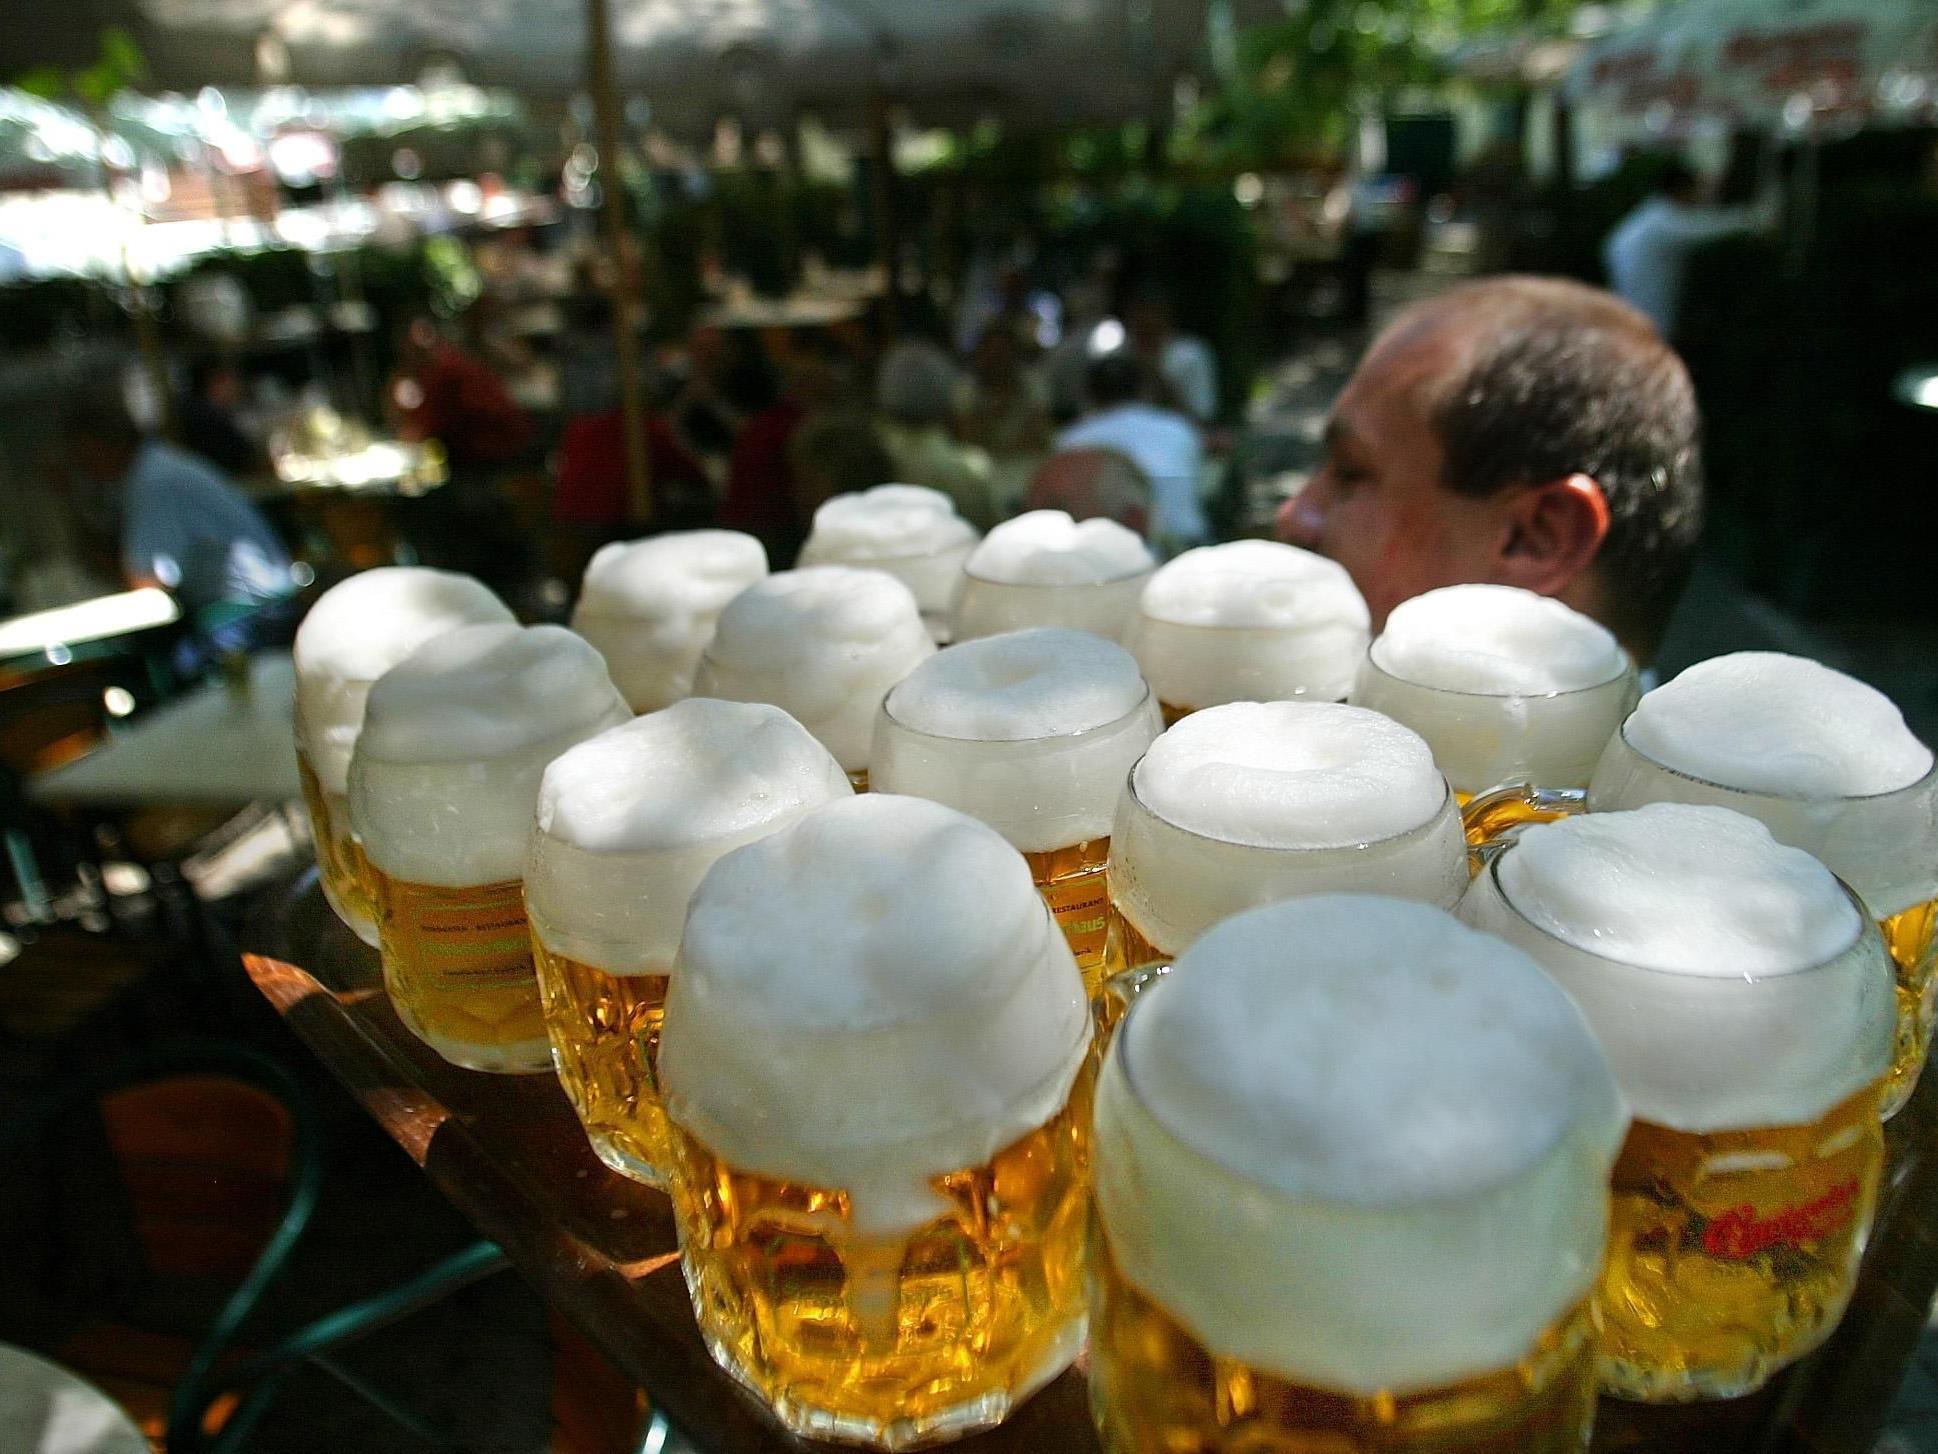 Zuviel Alkohol dürfte der Auslöser für die Kneipenschlägerei zwischen Briten und Tirolern gewesen sein.